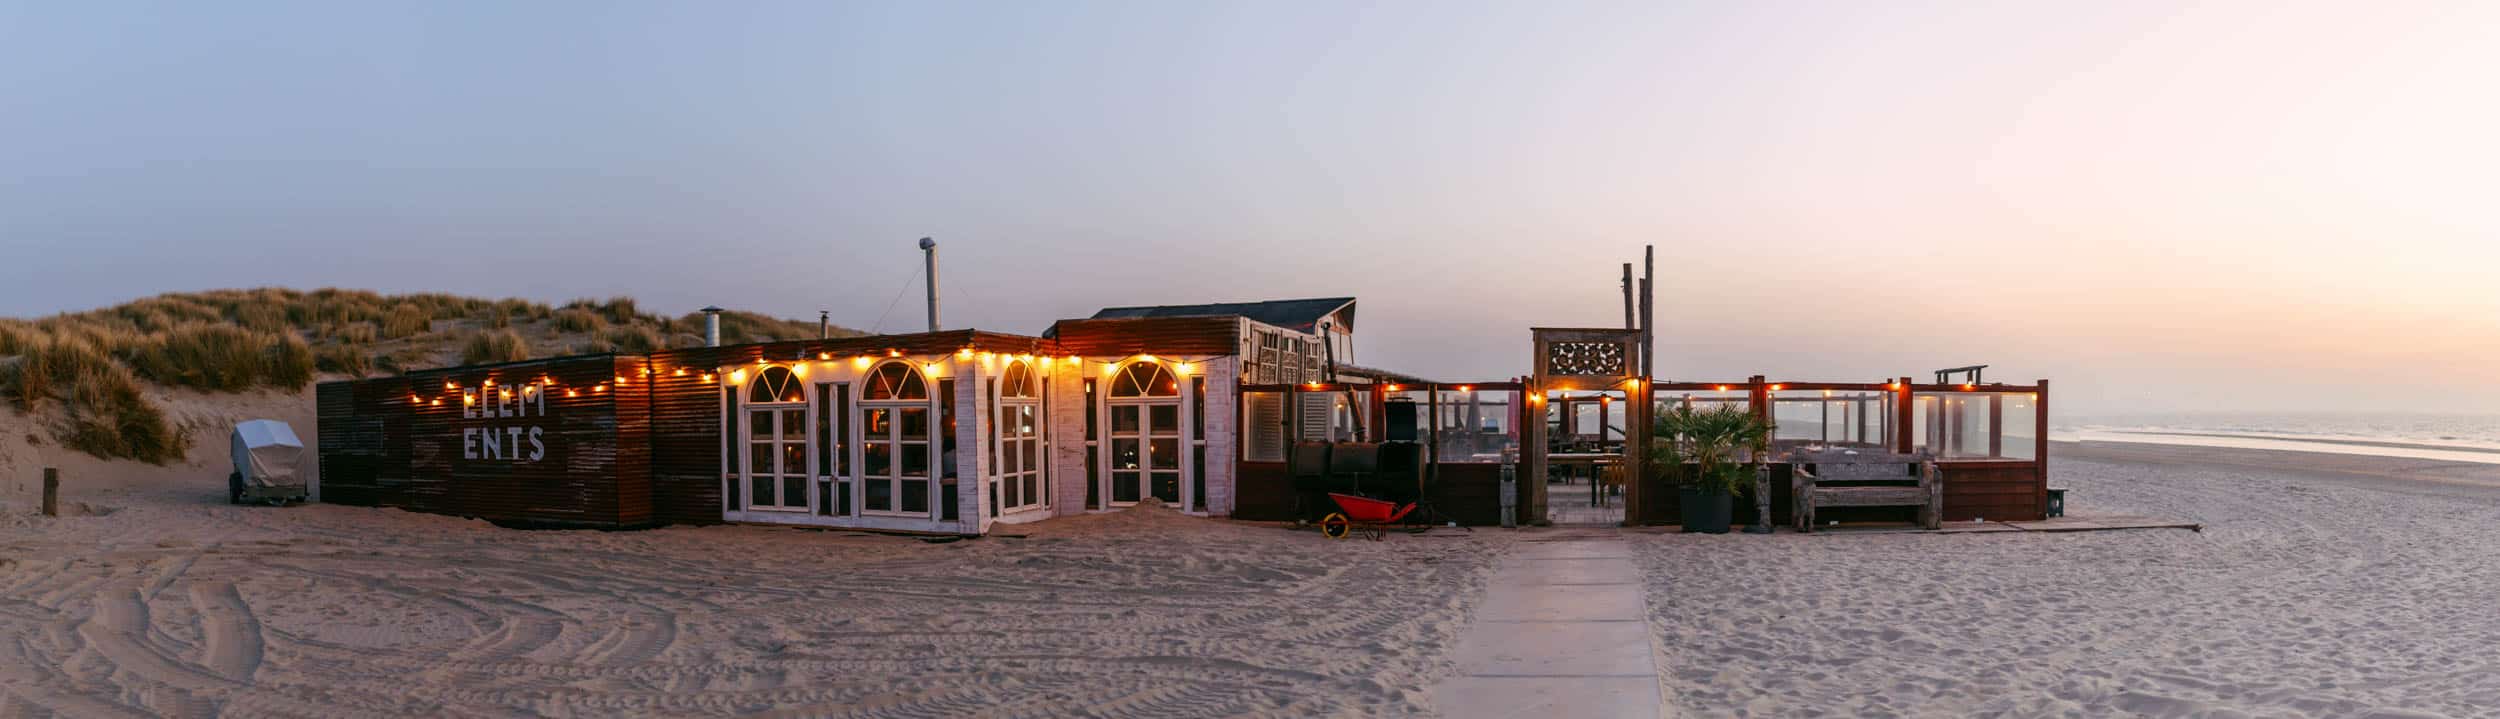 Elements Beach - Een restaurant op het strand in de schemering.